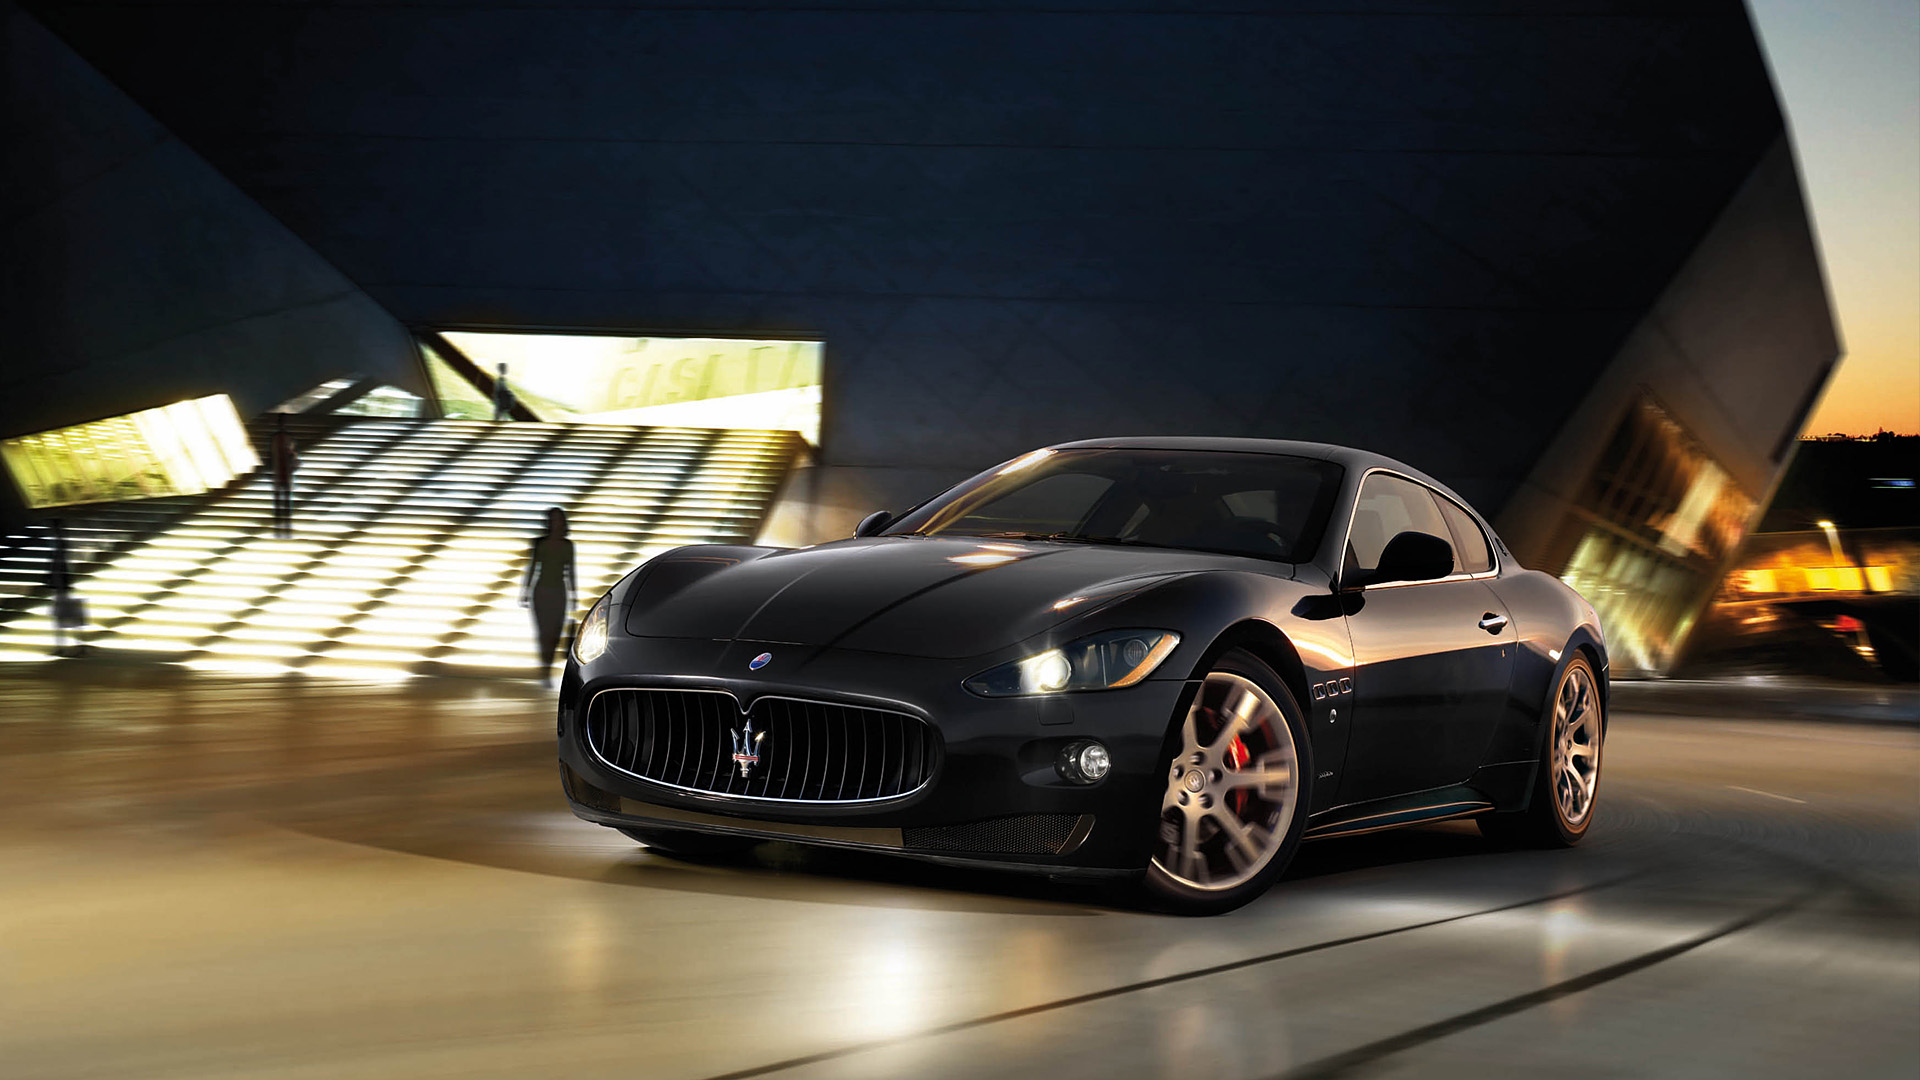  2009 Maserati GranTurismo S Wallpaper.